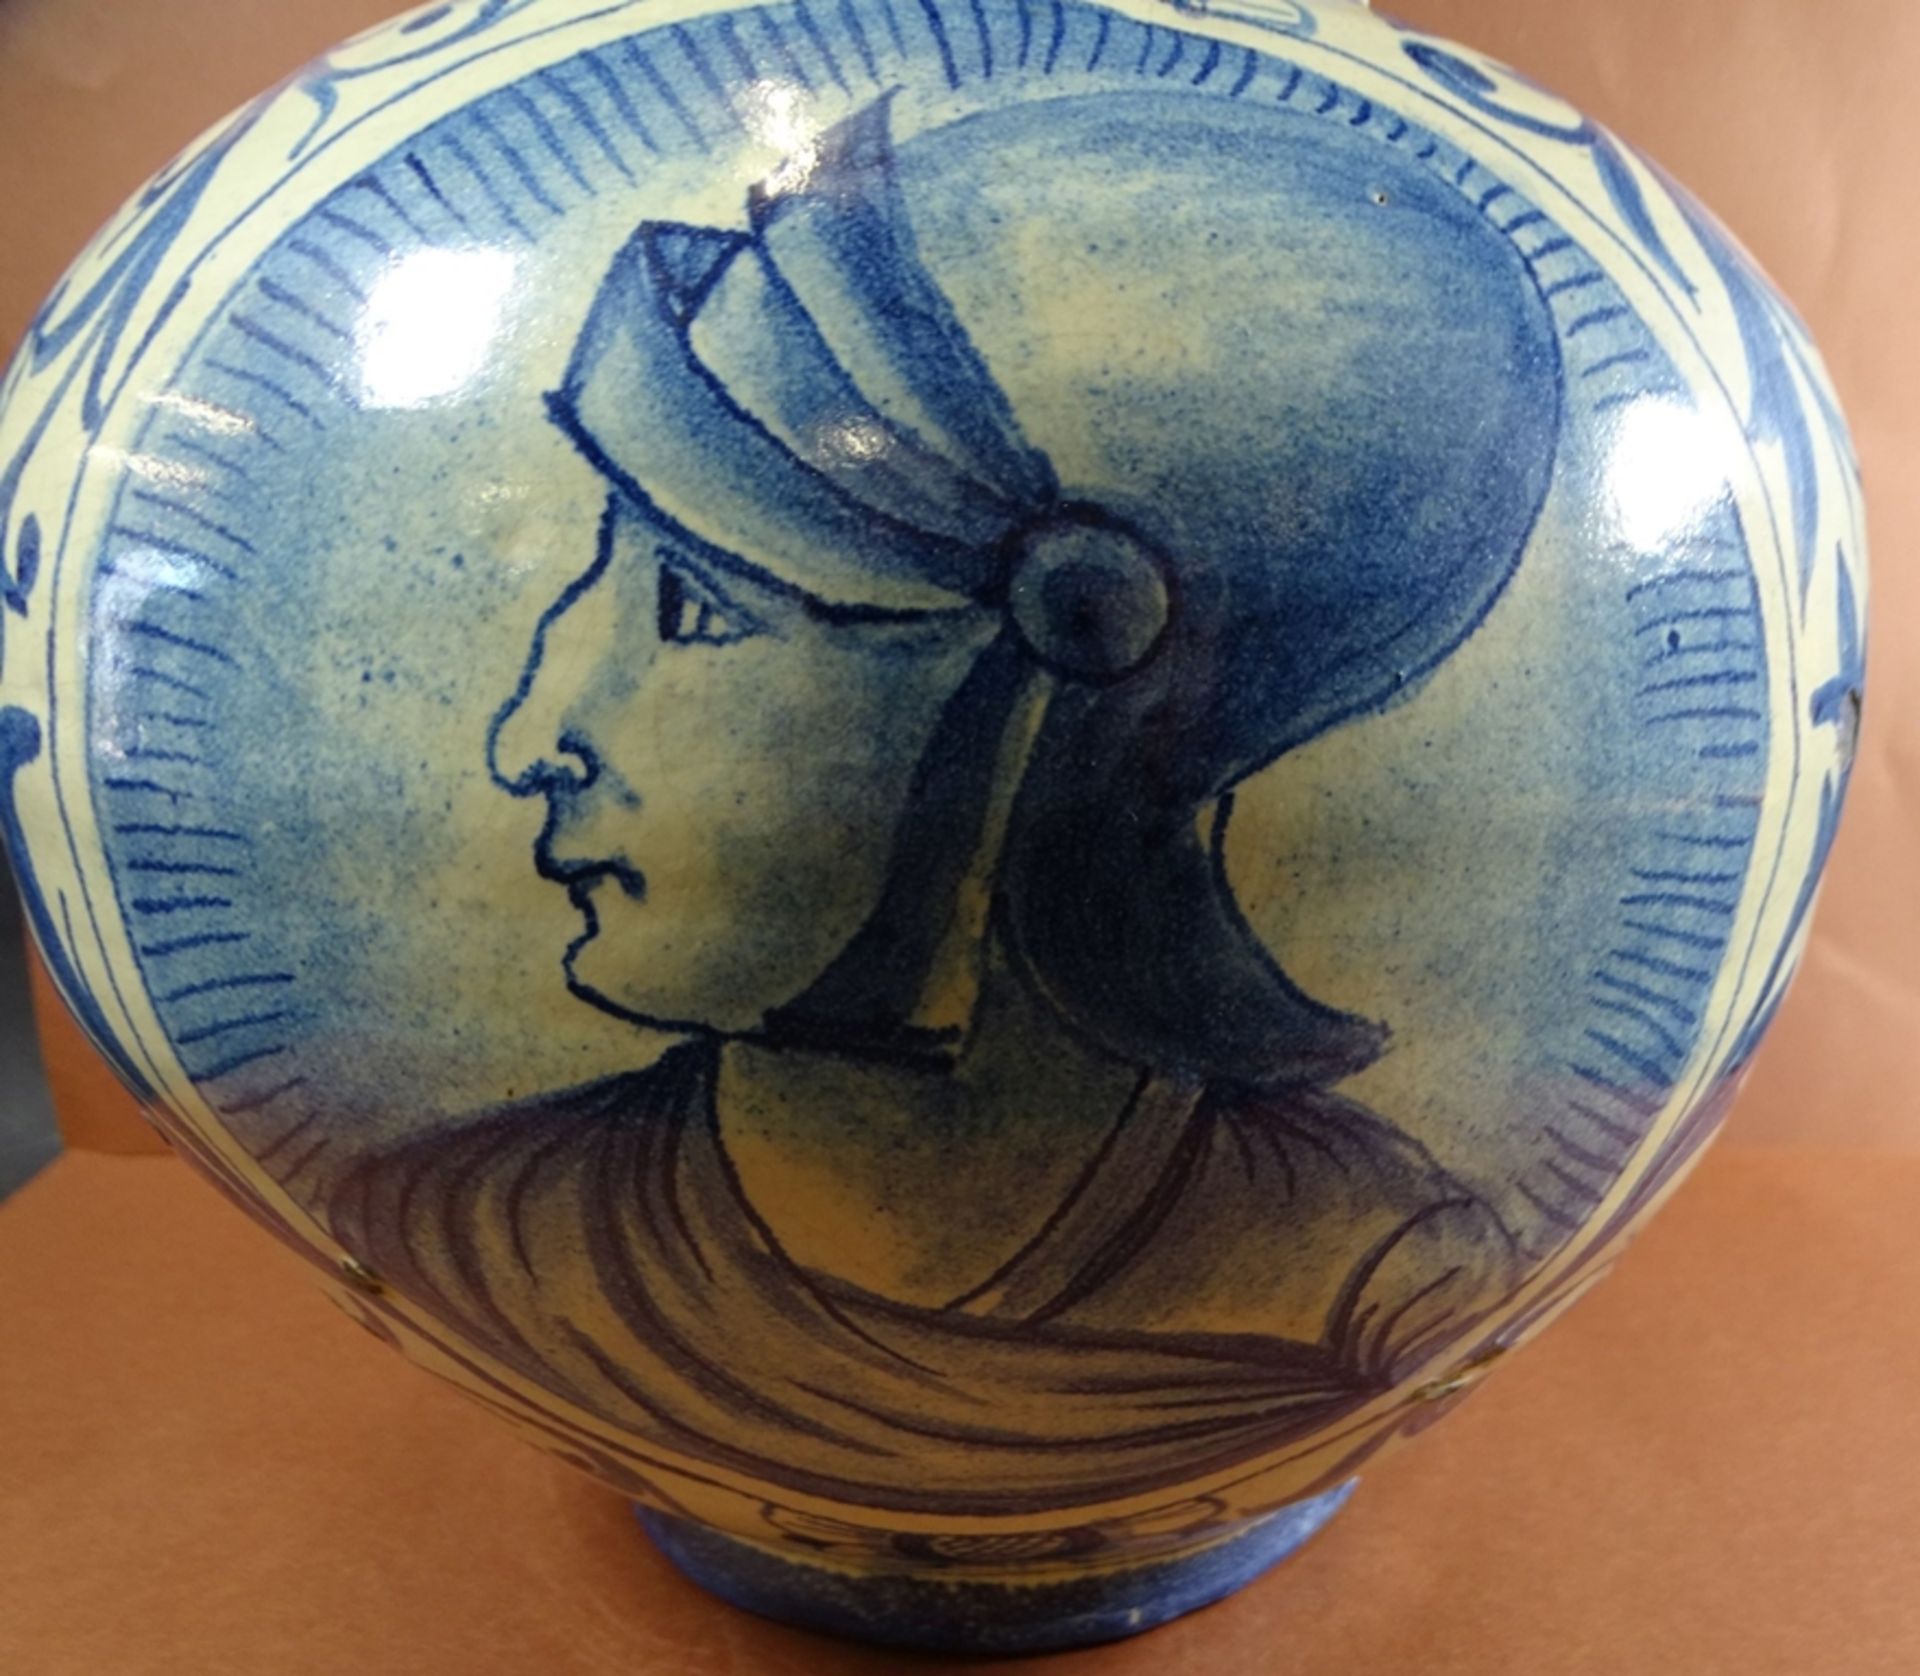 gr. Fayence-Vase mit Portrait eines Condottieri, Blaumalerei, Alters-u. Gebrauchsspuren, einige kl - Image 2 of 5